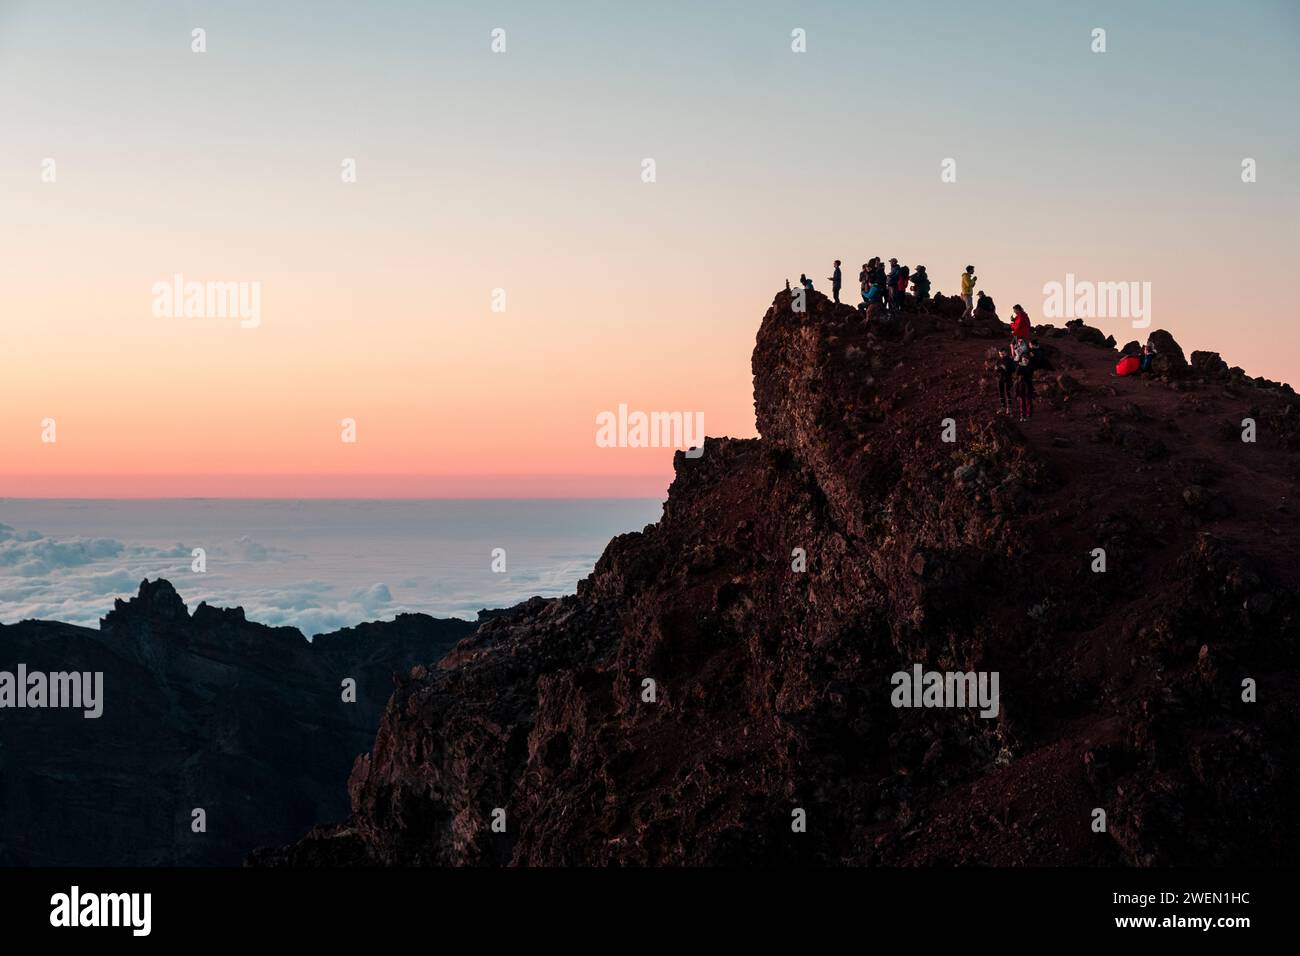 Un groupe de randonneurs se dresse au sommet du terrain accidenté du Piton des Neiges, témoin du lever du soleil à couper le souffle qui recouvre l'île de la Réunion de teintes chaudes Banque D'Images